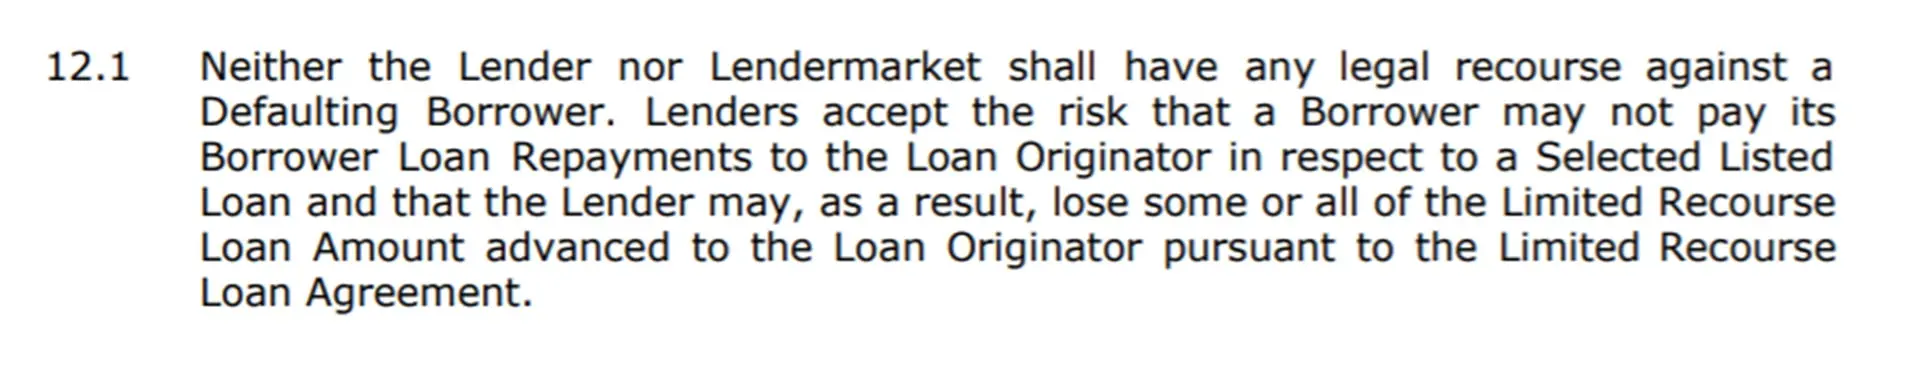 lendermarket terms